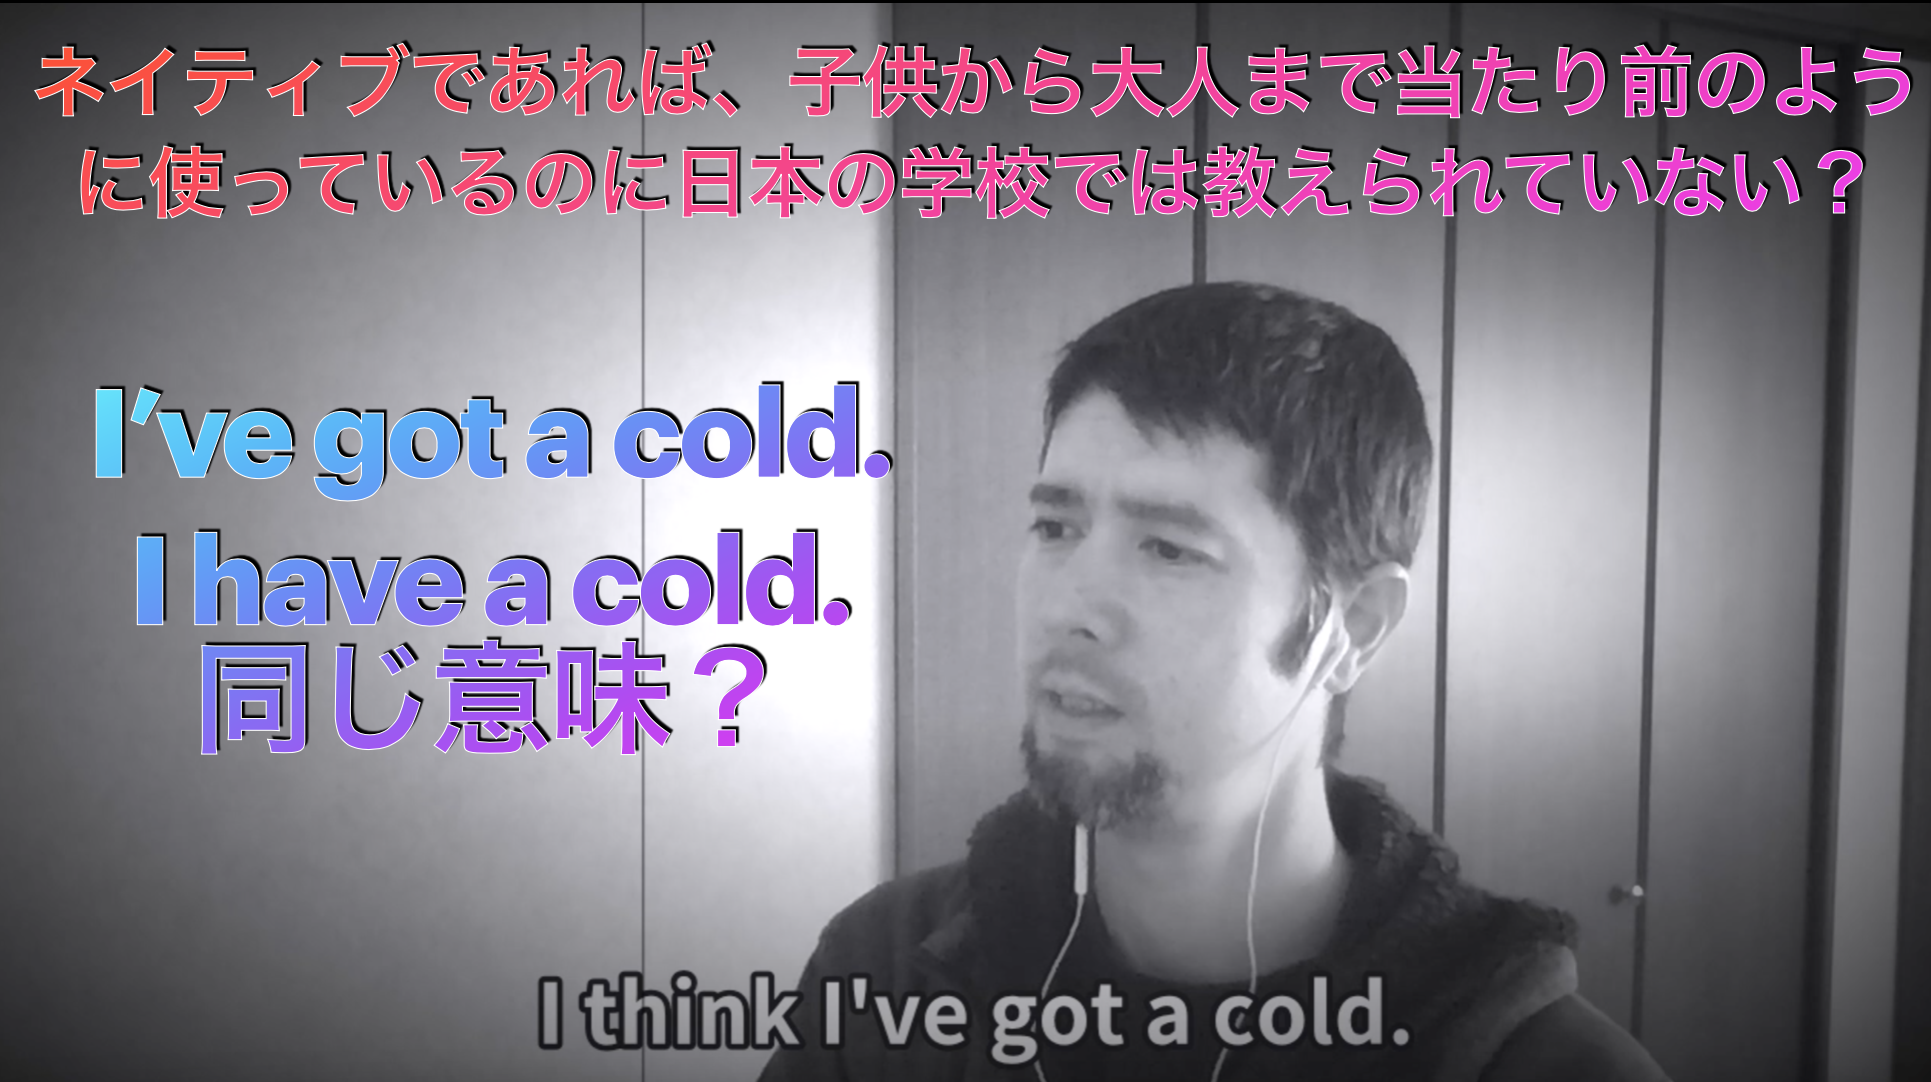 【動画】I’ve got a cold. I have a cold. 同じ意味？　質問に答える